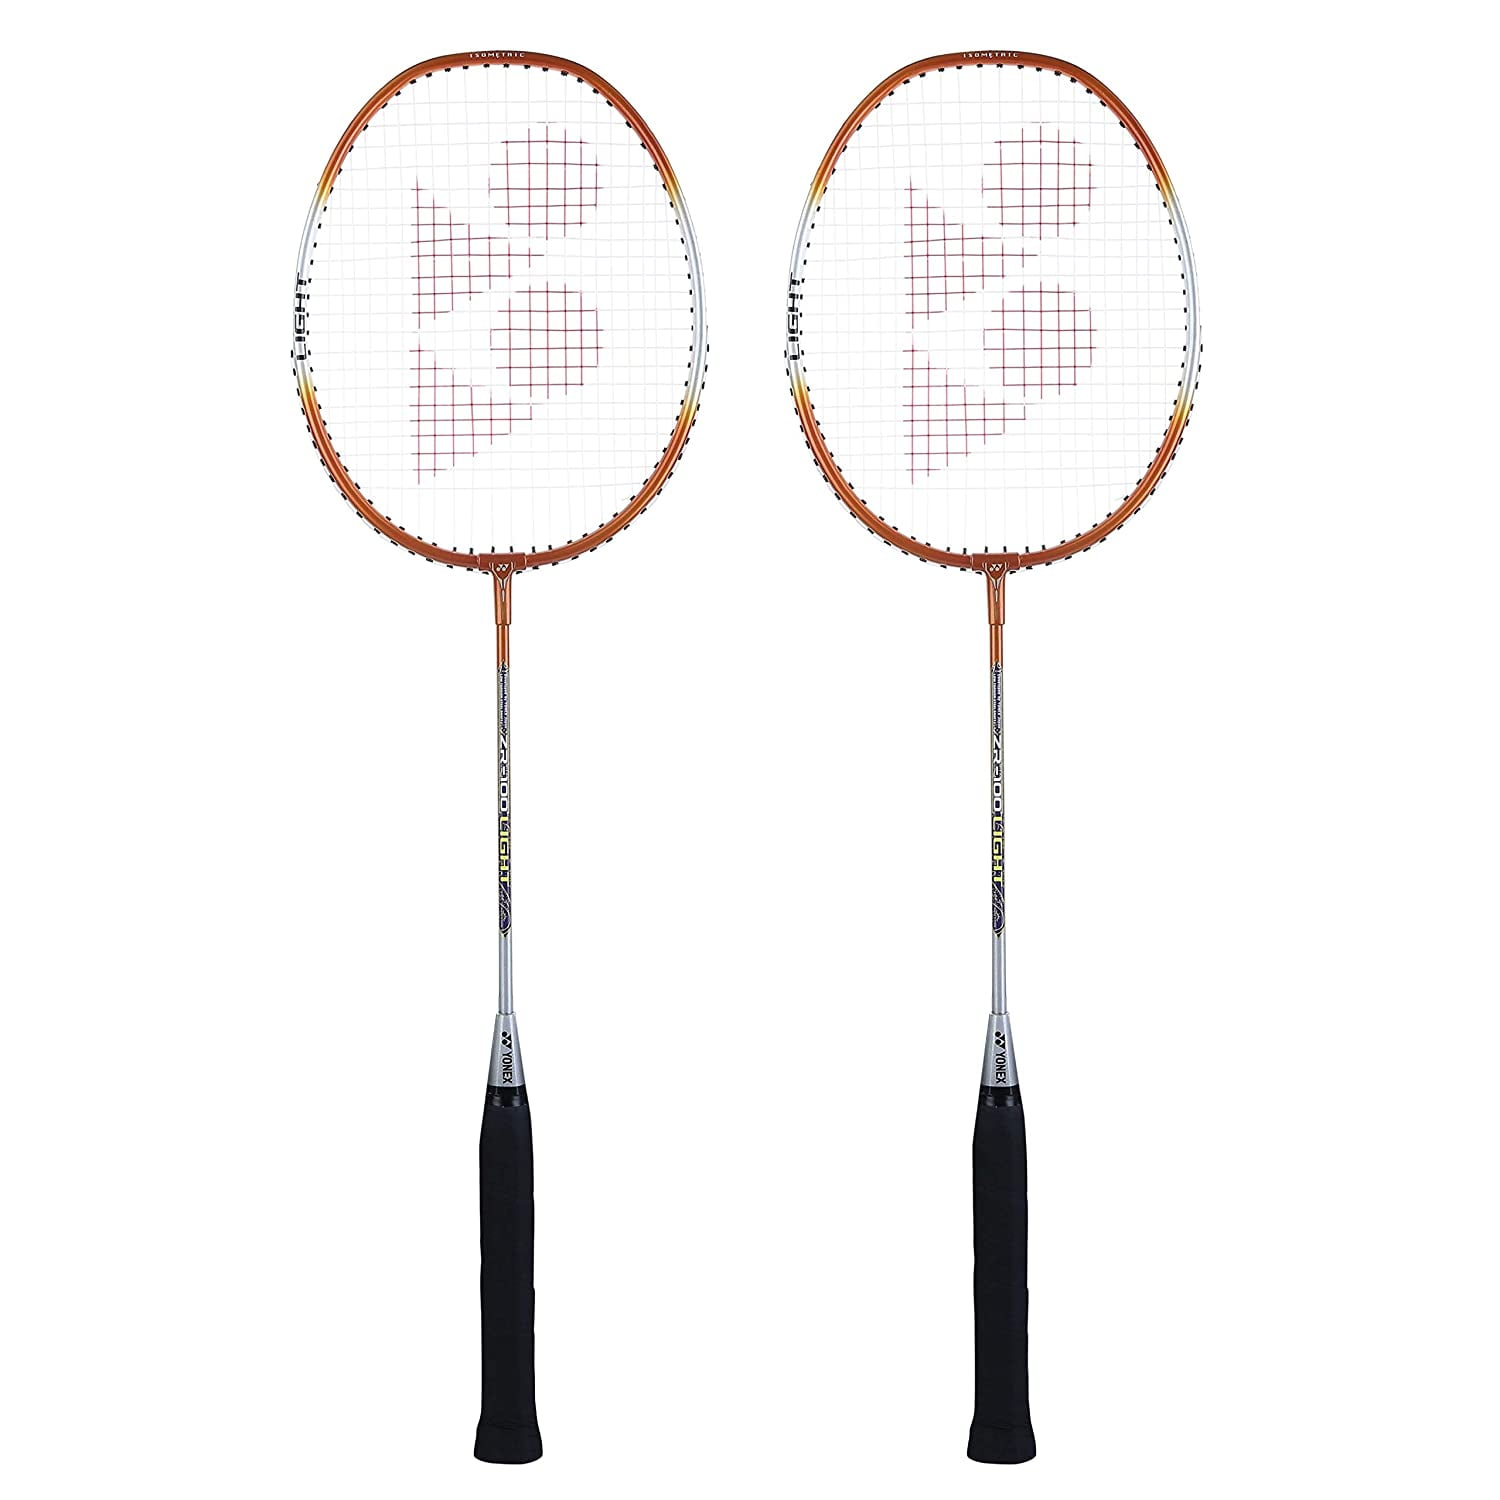 Yonex ZR 100 Light Aluminium Badminton Racquet with Full Cover, Set of 2 Orange